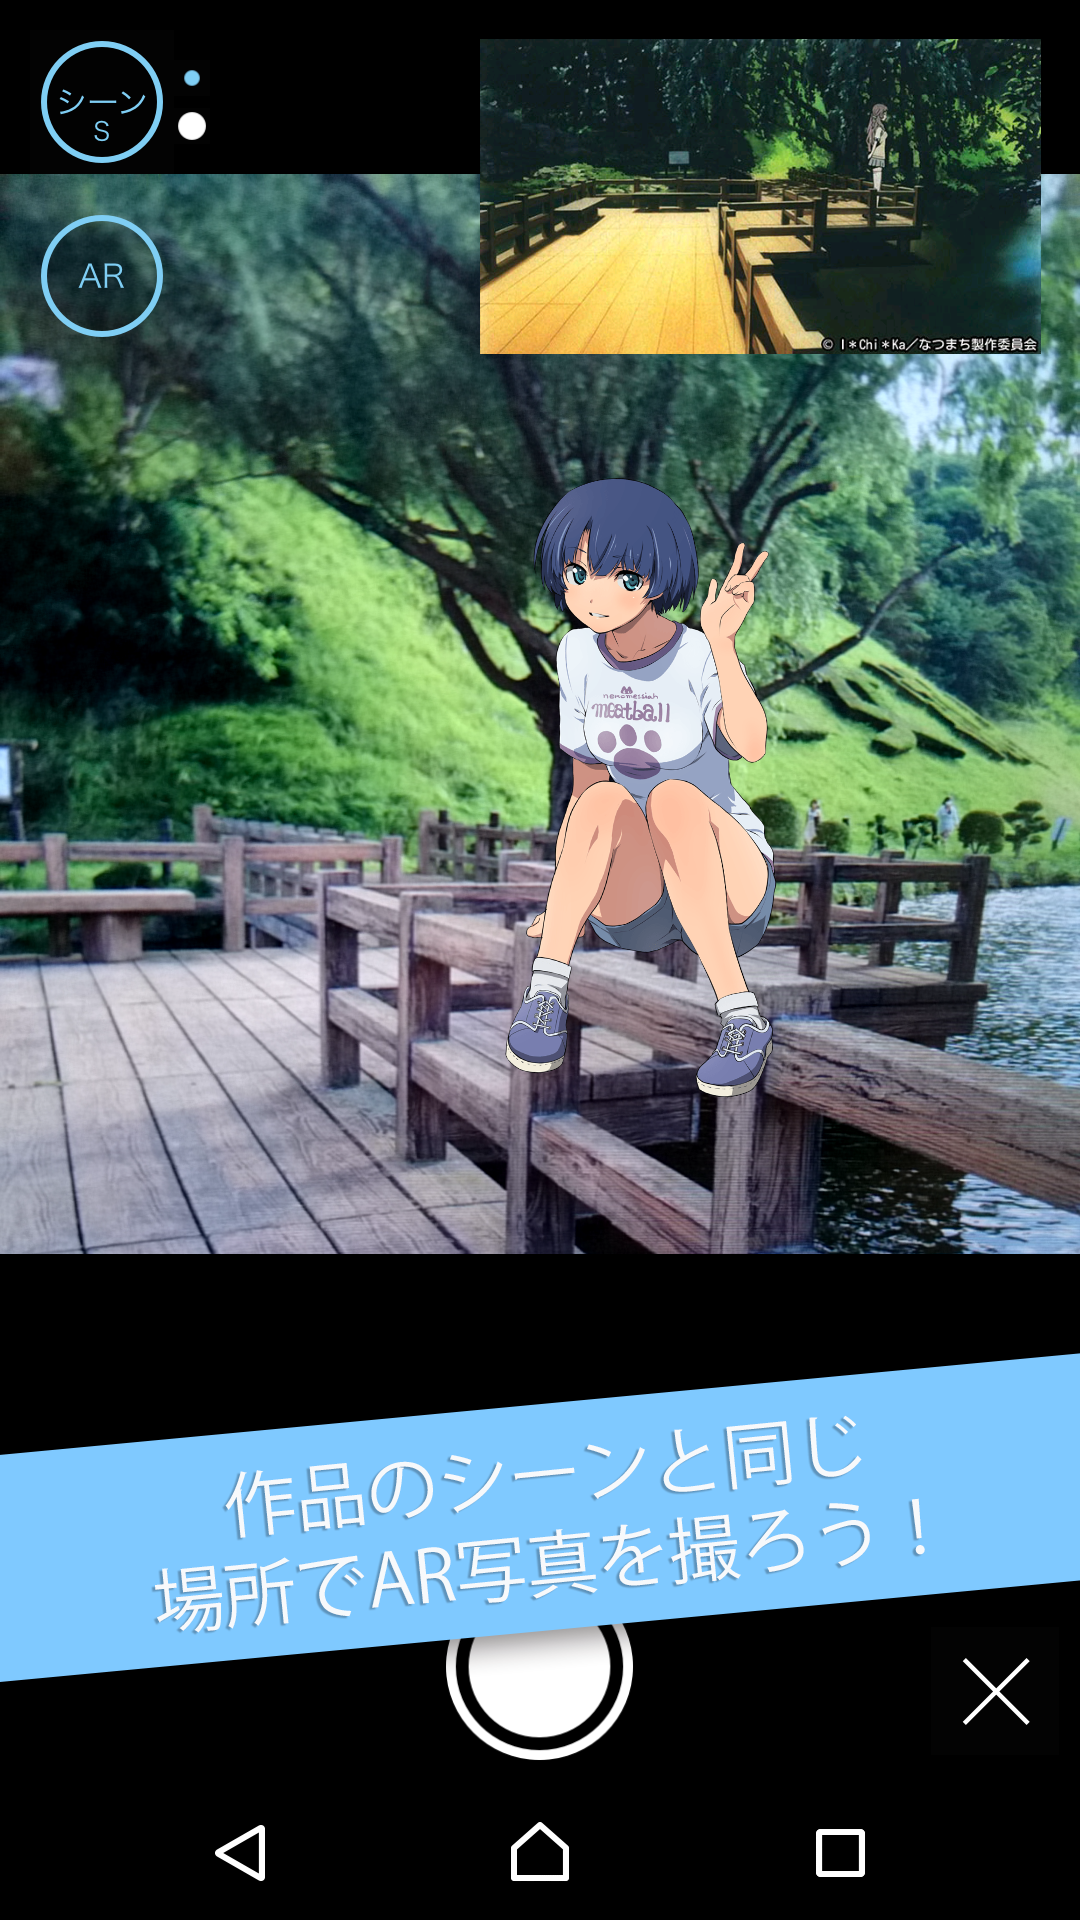 Android application 舞台めぐり - アニメ聖地巡礼・コンテンツツーリズムアプリ screenshort